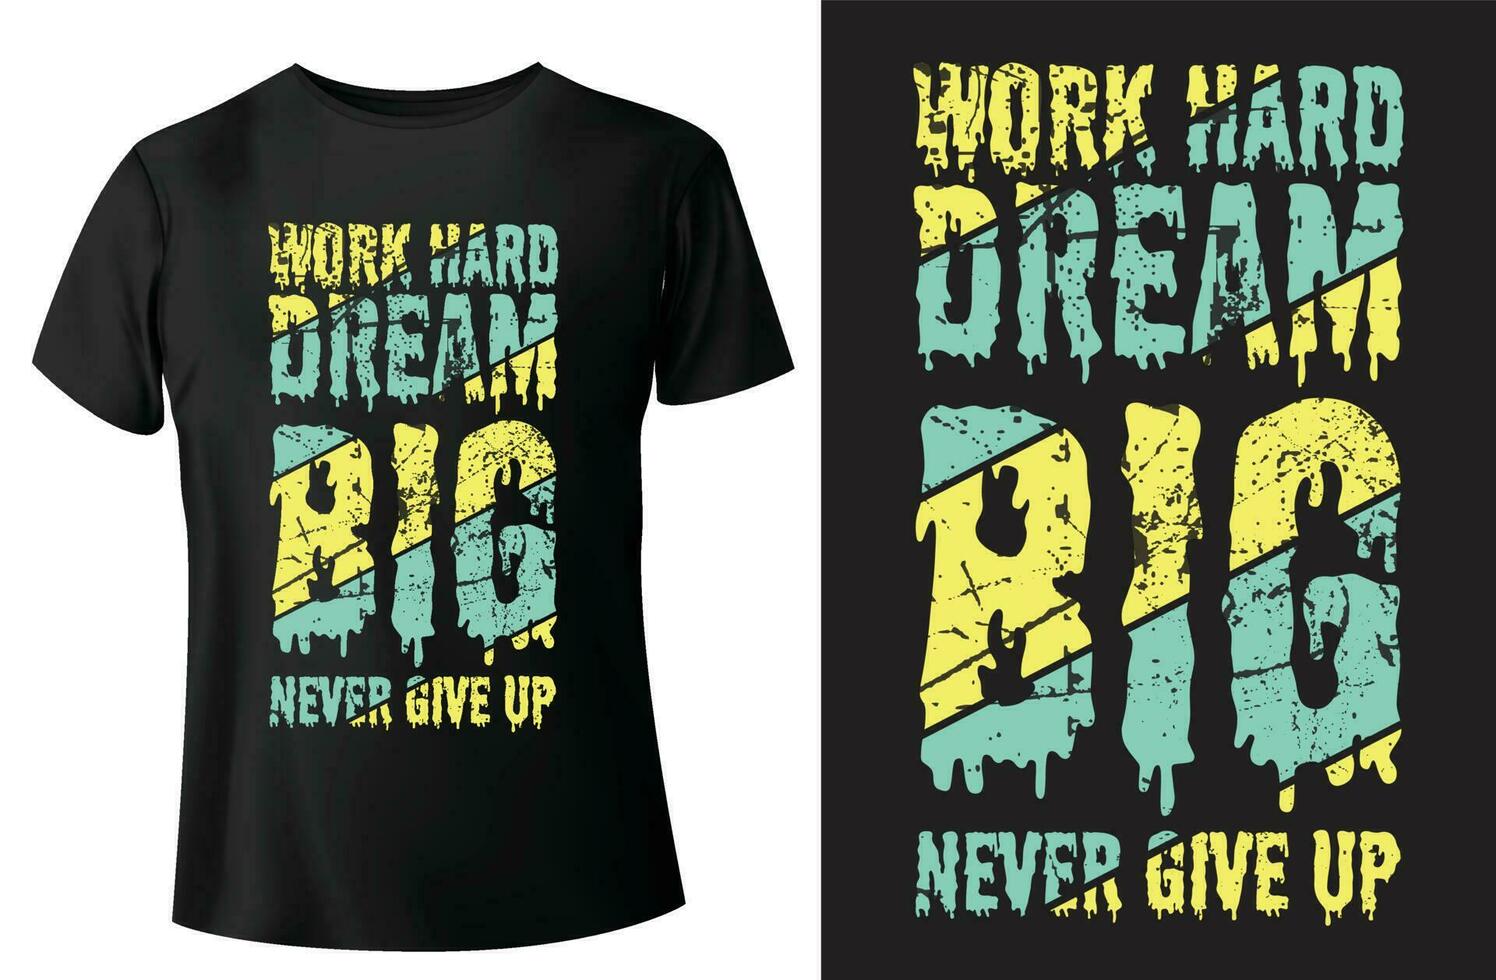 travail difficile rêver gros jamais donner en haut citation de motivation letering typographie T-shirt conception vecteur